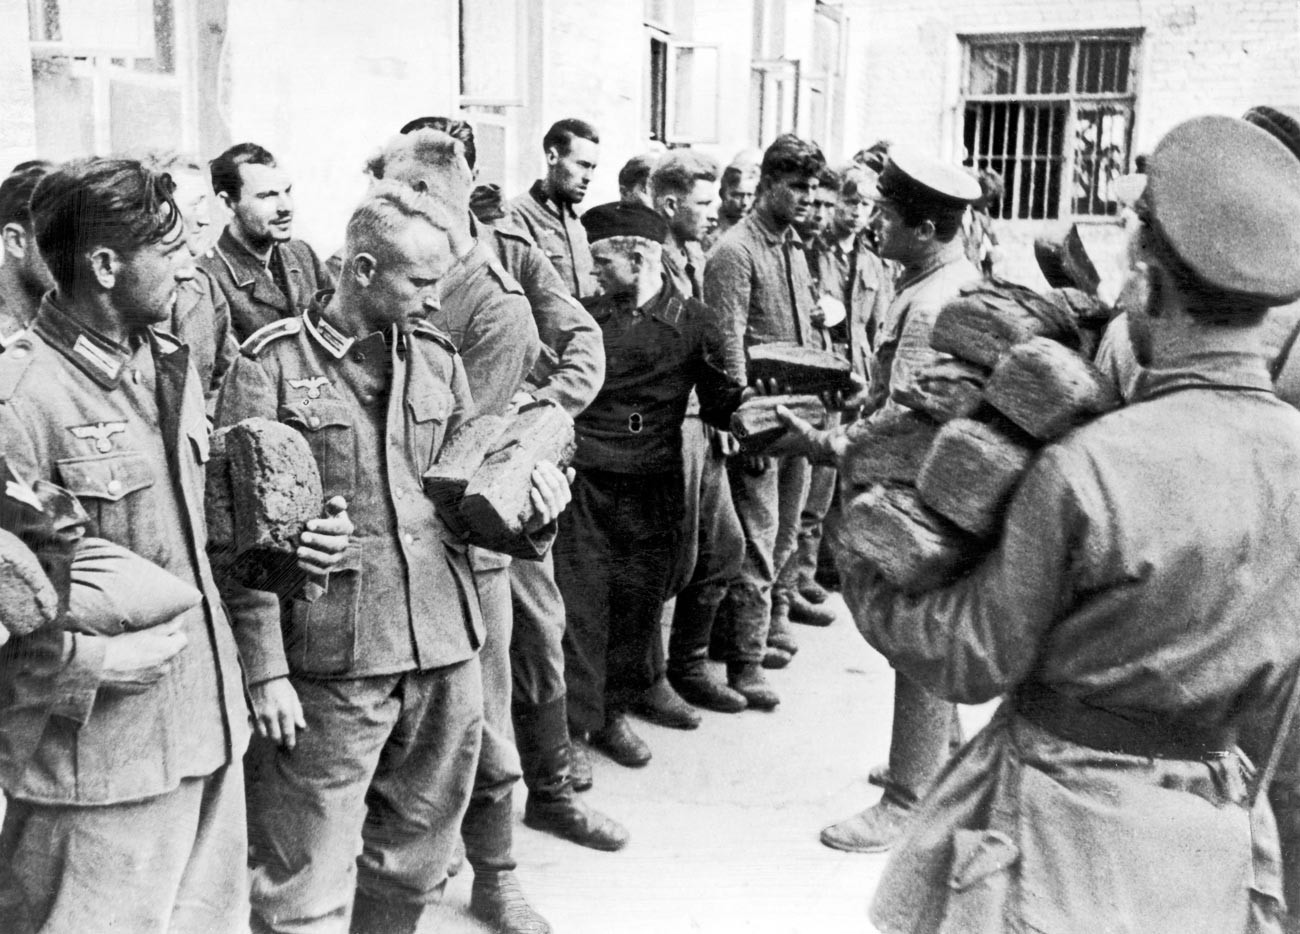 Deljenje kruha med nemškimi vojnimi ujetniki, ki so jih ujeli ruske sile med drugo svetovno vojno. 9. avgust 1941.